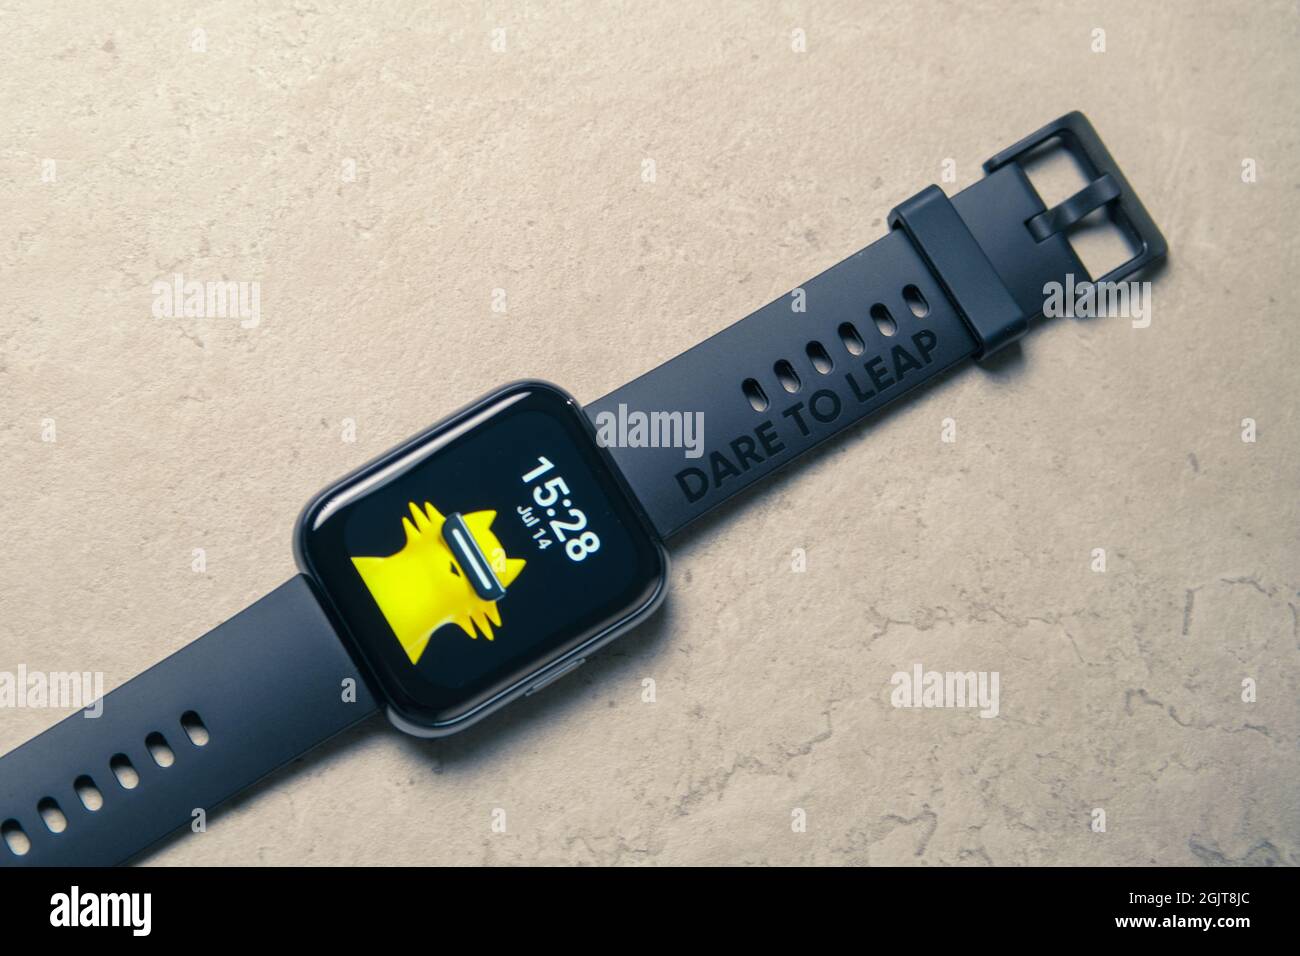 BANGKOK THAILANDIA : Realme lancia il nuovo Smartwatch Realme Watch 2 Pro  il 2,2021 giugno Foto stock - Alamy